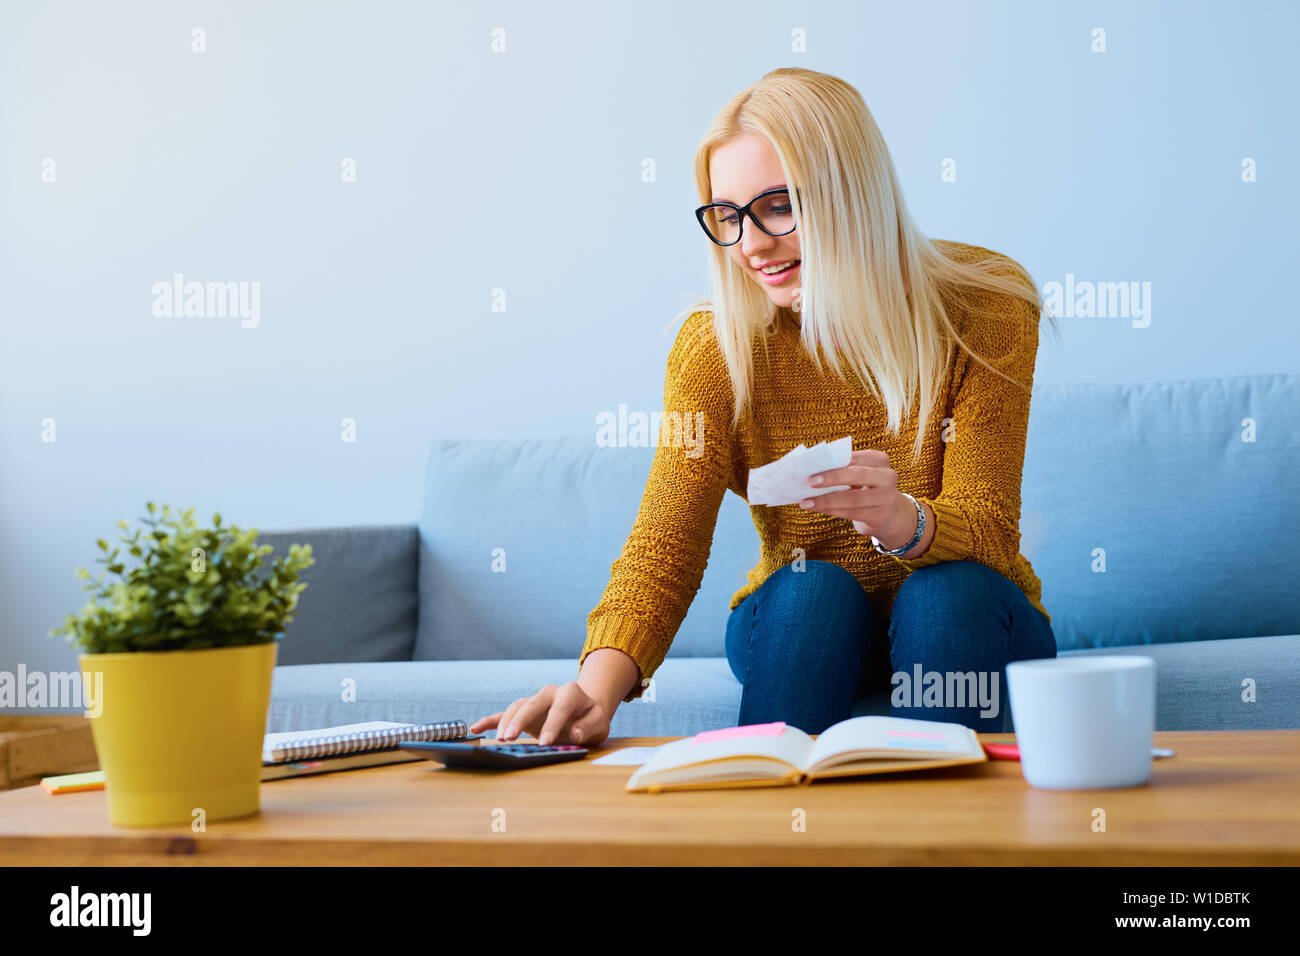 Giovane donna con cambiali calcolo delle finanze, seduto sul divano Foto Stock